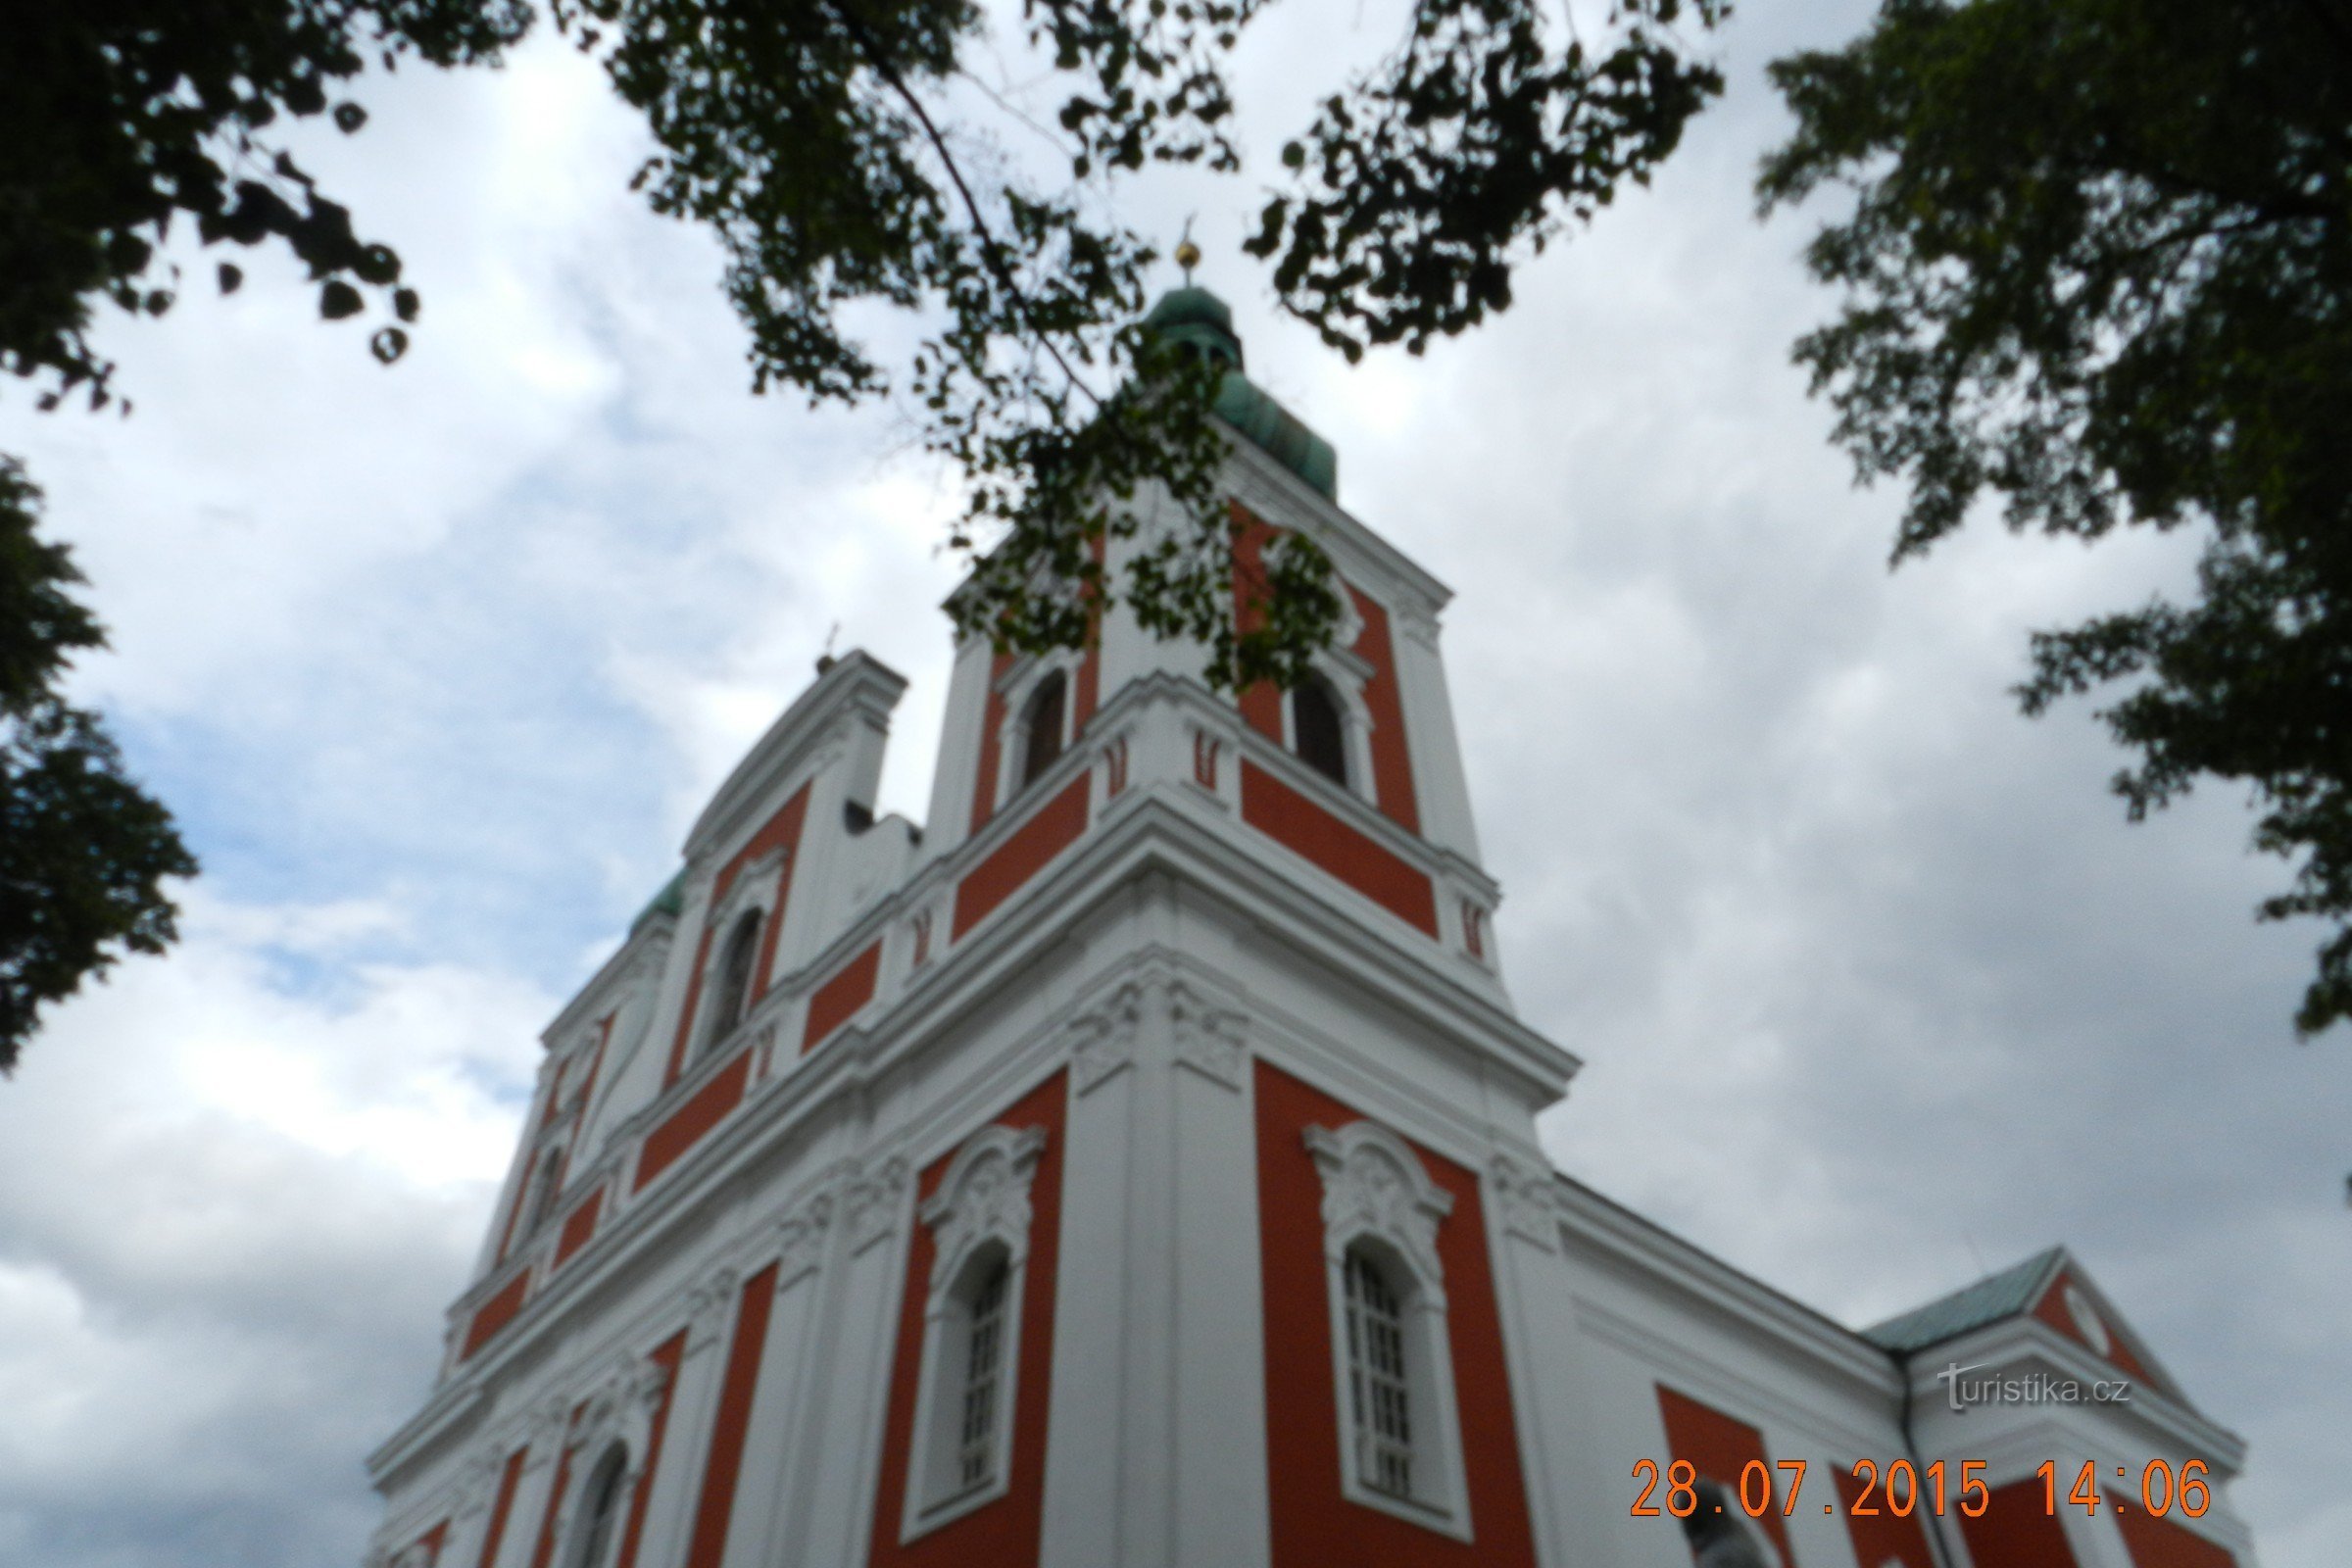 Cvilín - iglesia de peregrinación PMSedmibolestné, capilla imperio en los alrededores - centro espiritual de Silesia